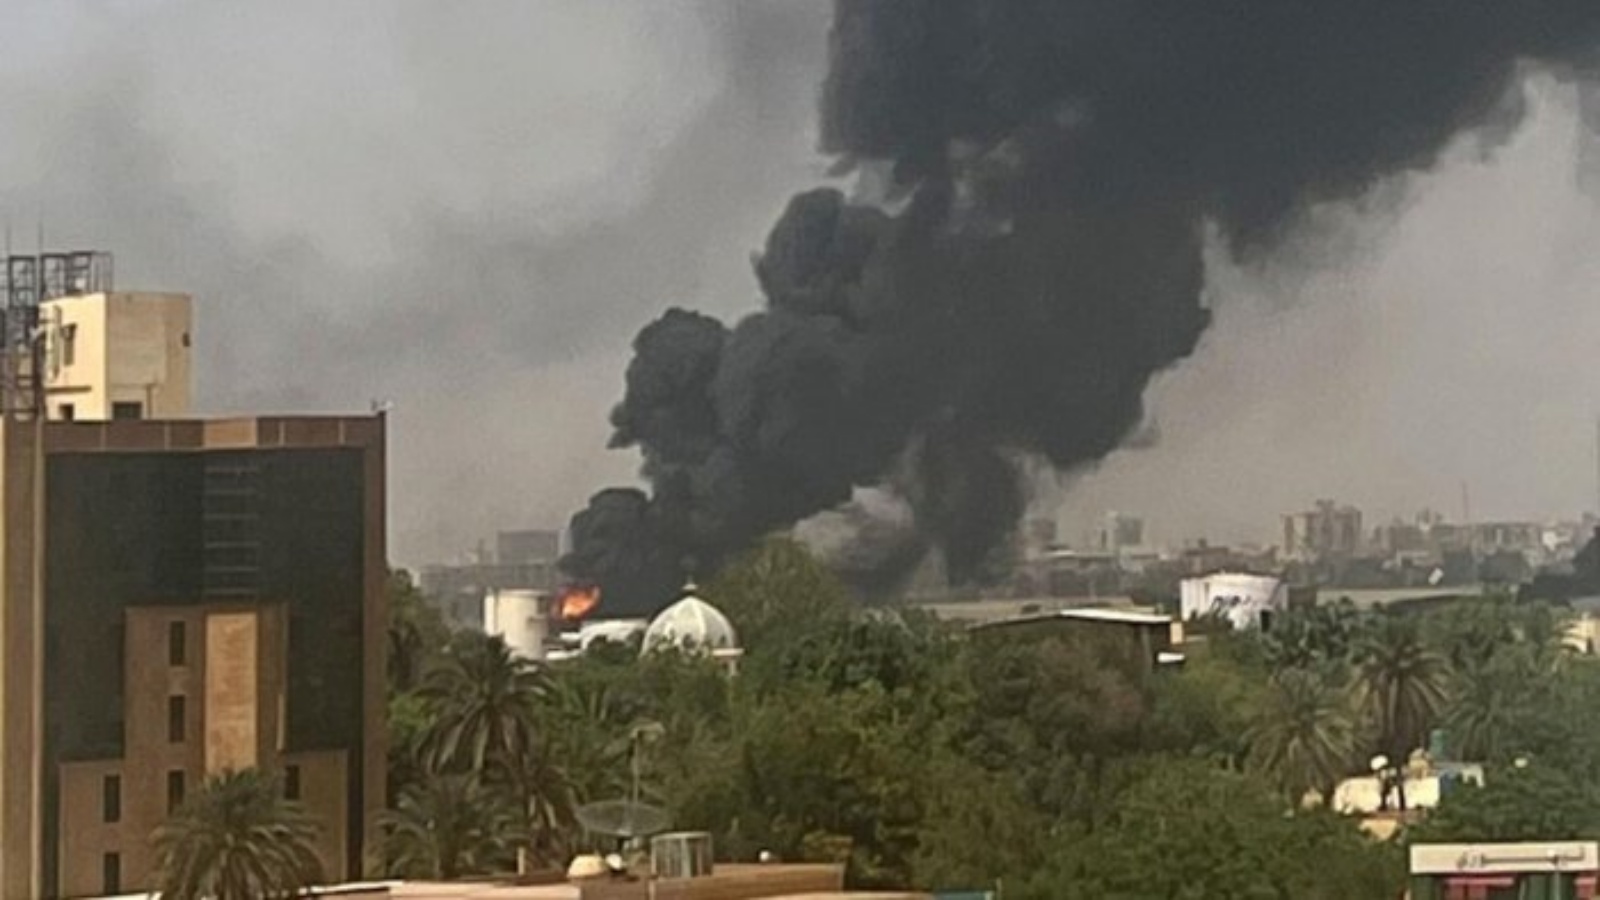 دخان يتصاعد فوق المباني السكنية في السودان خلال اليوم الثاني من القتال بين الجيش والقوات شبه العسكرية